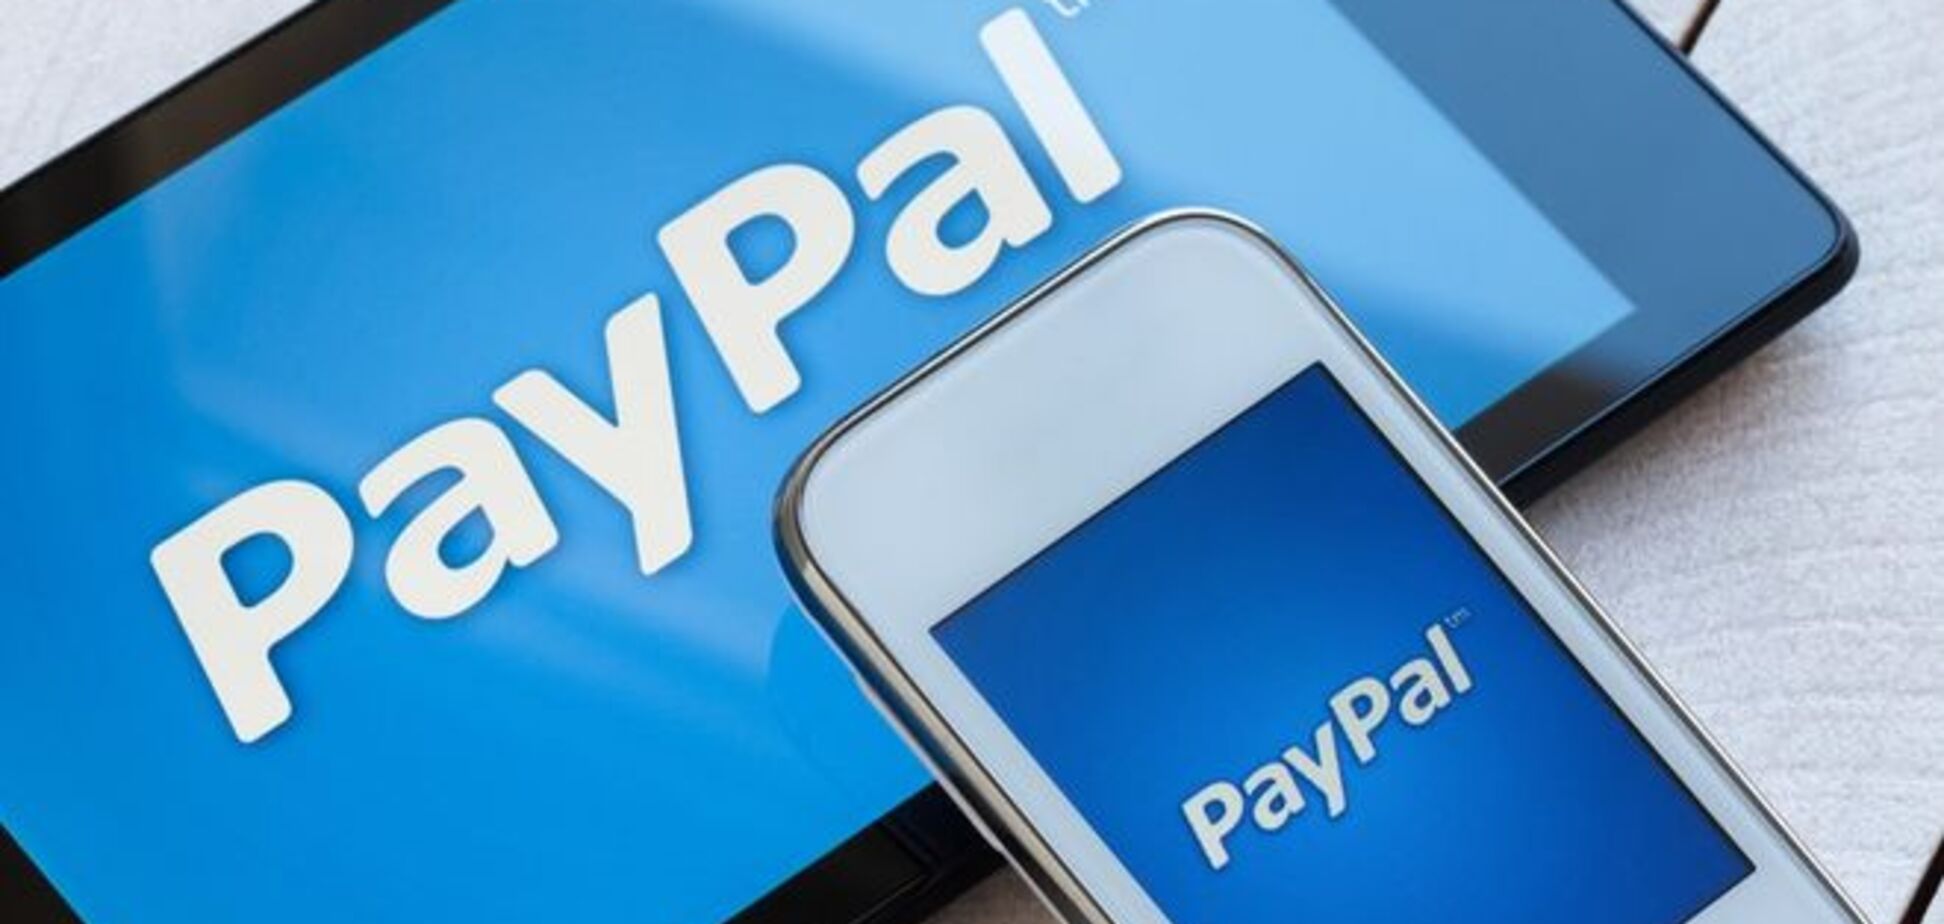 НБУ и Deloitte готовят вхождение PayPal в Украину